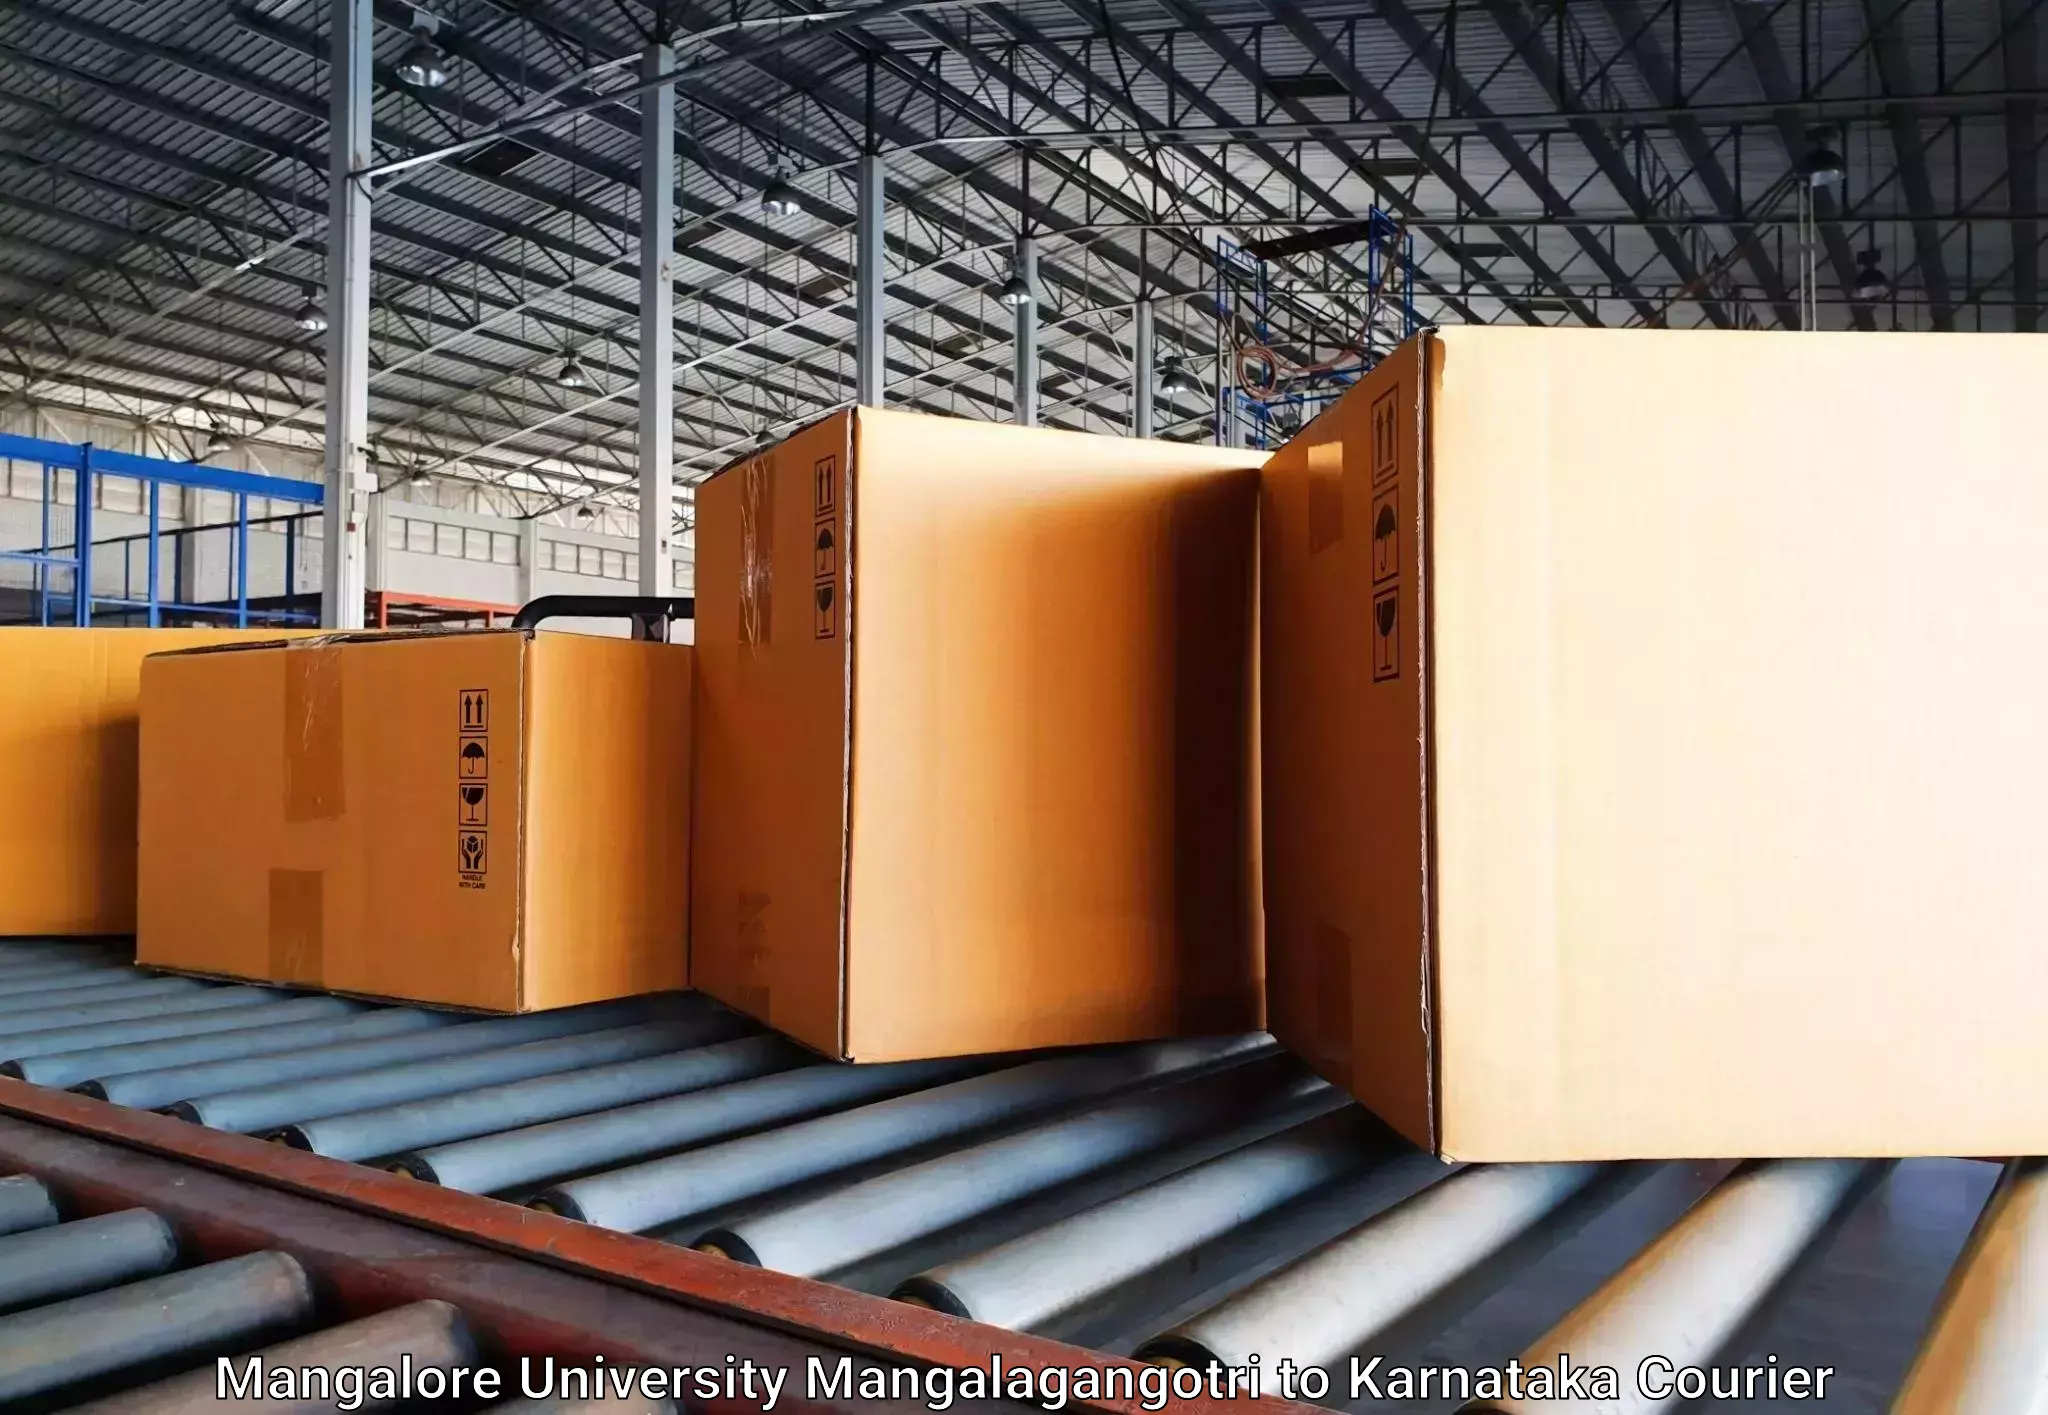 Baggage shipping experts Mangalore University Mangalagangotri to Kolar